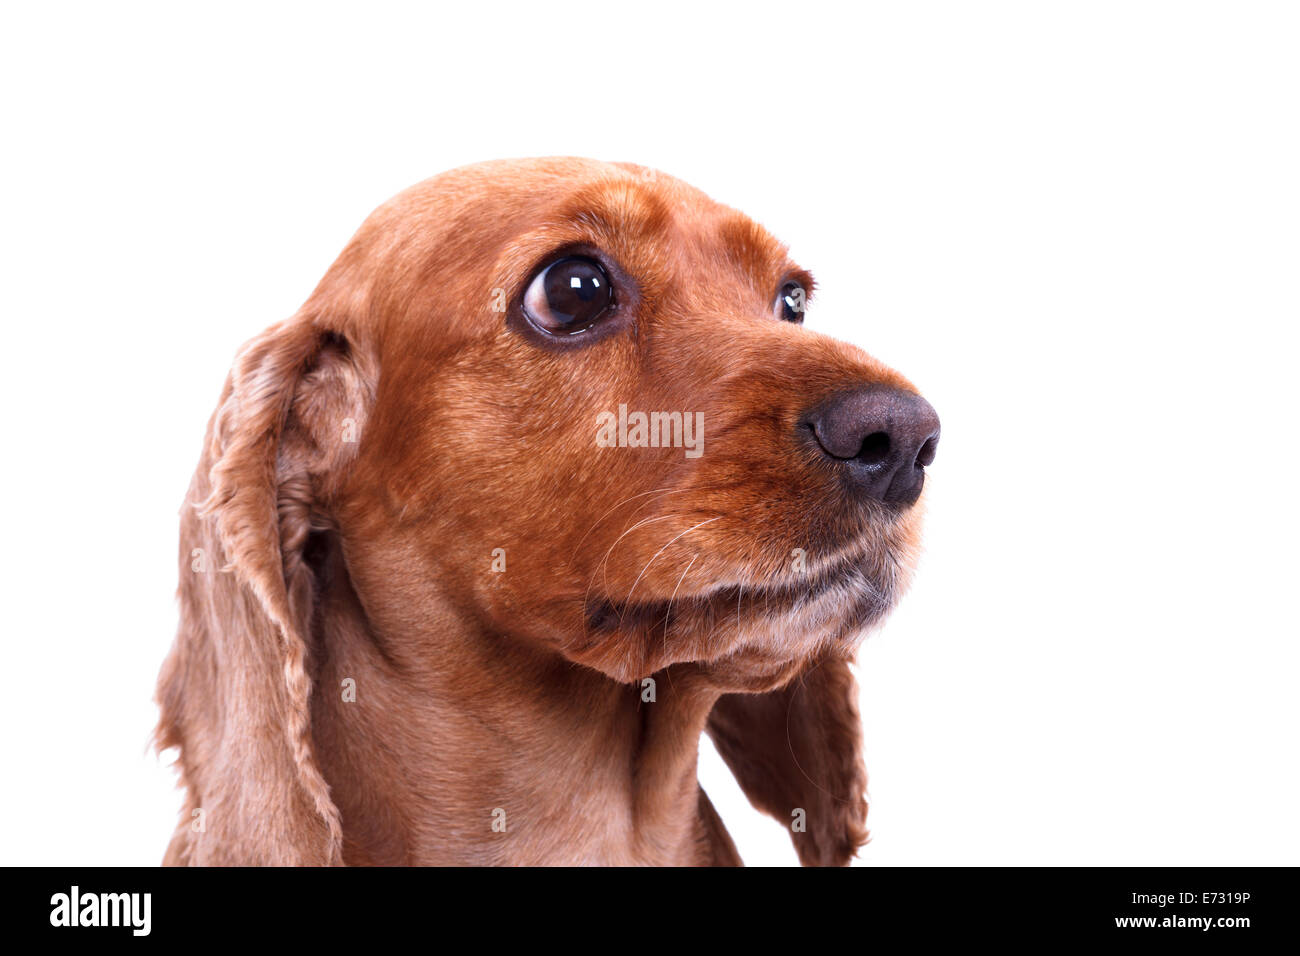 English cocker spaniel dog, isolated on white background. Stock Photo